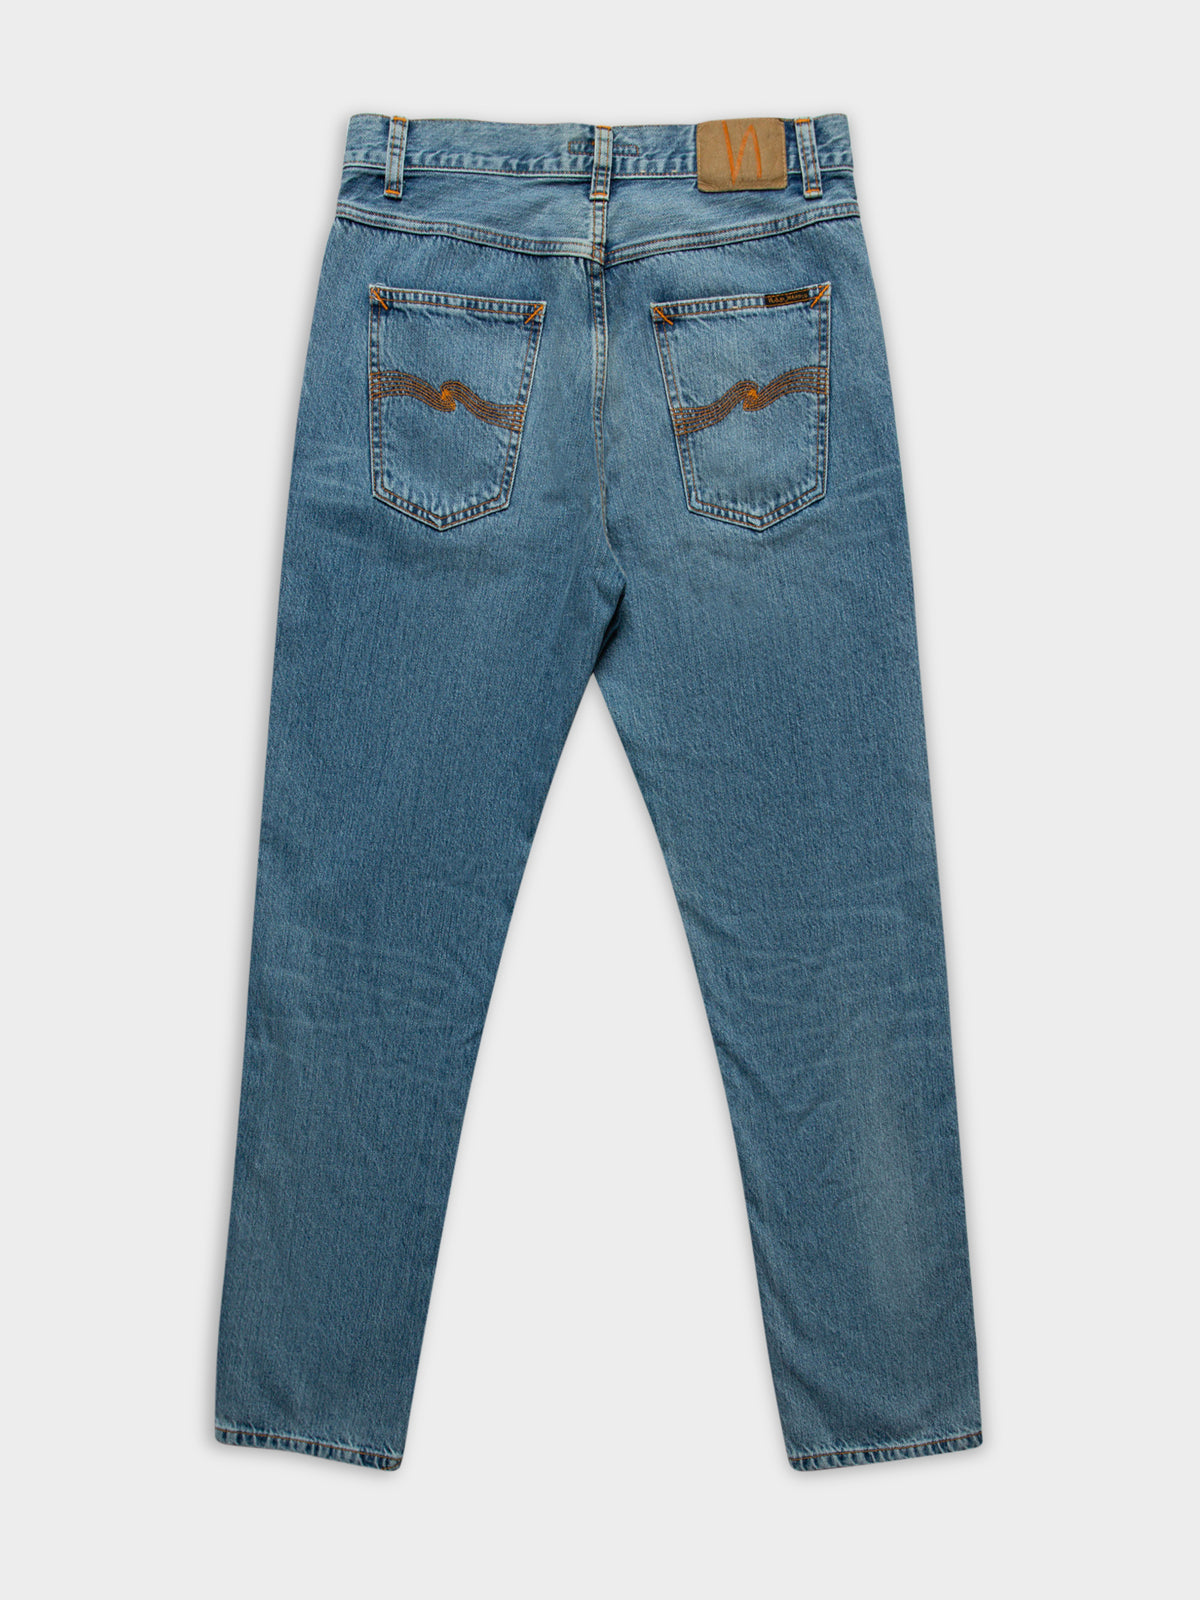 Gritty Jackson Jeans in Indigo Worn